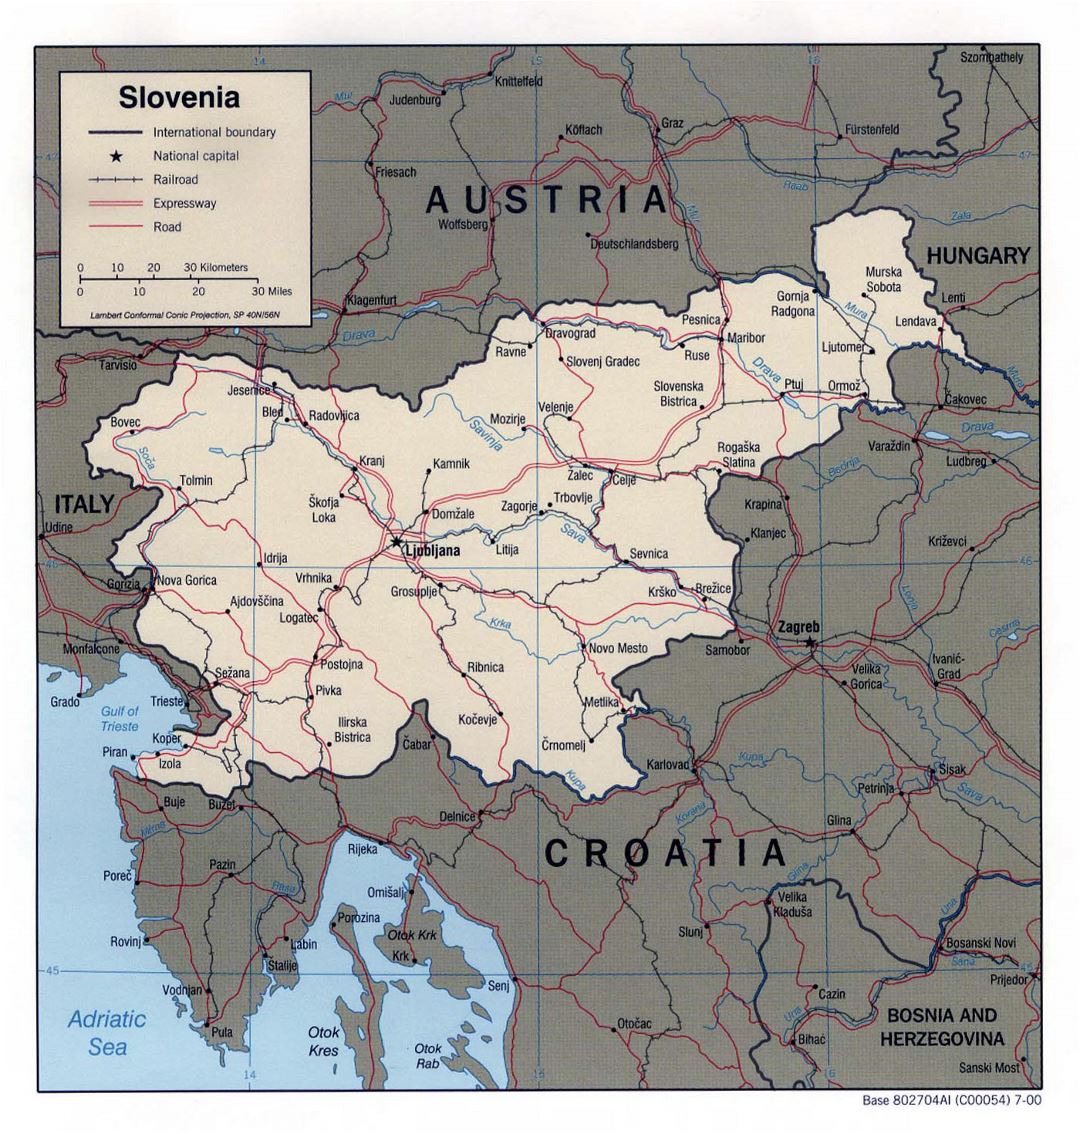 Grande mapa político de Eslovenia con carreteras, ferrocarriles y importantes ciudades - 2000